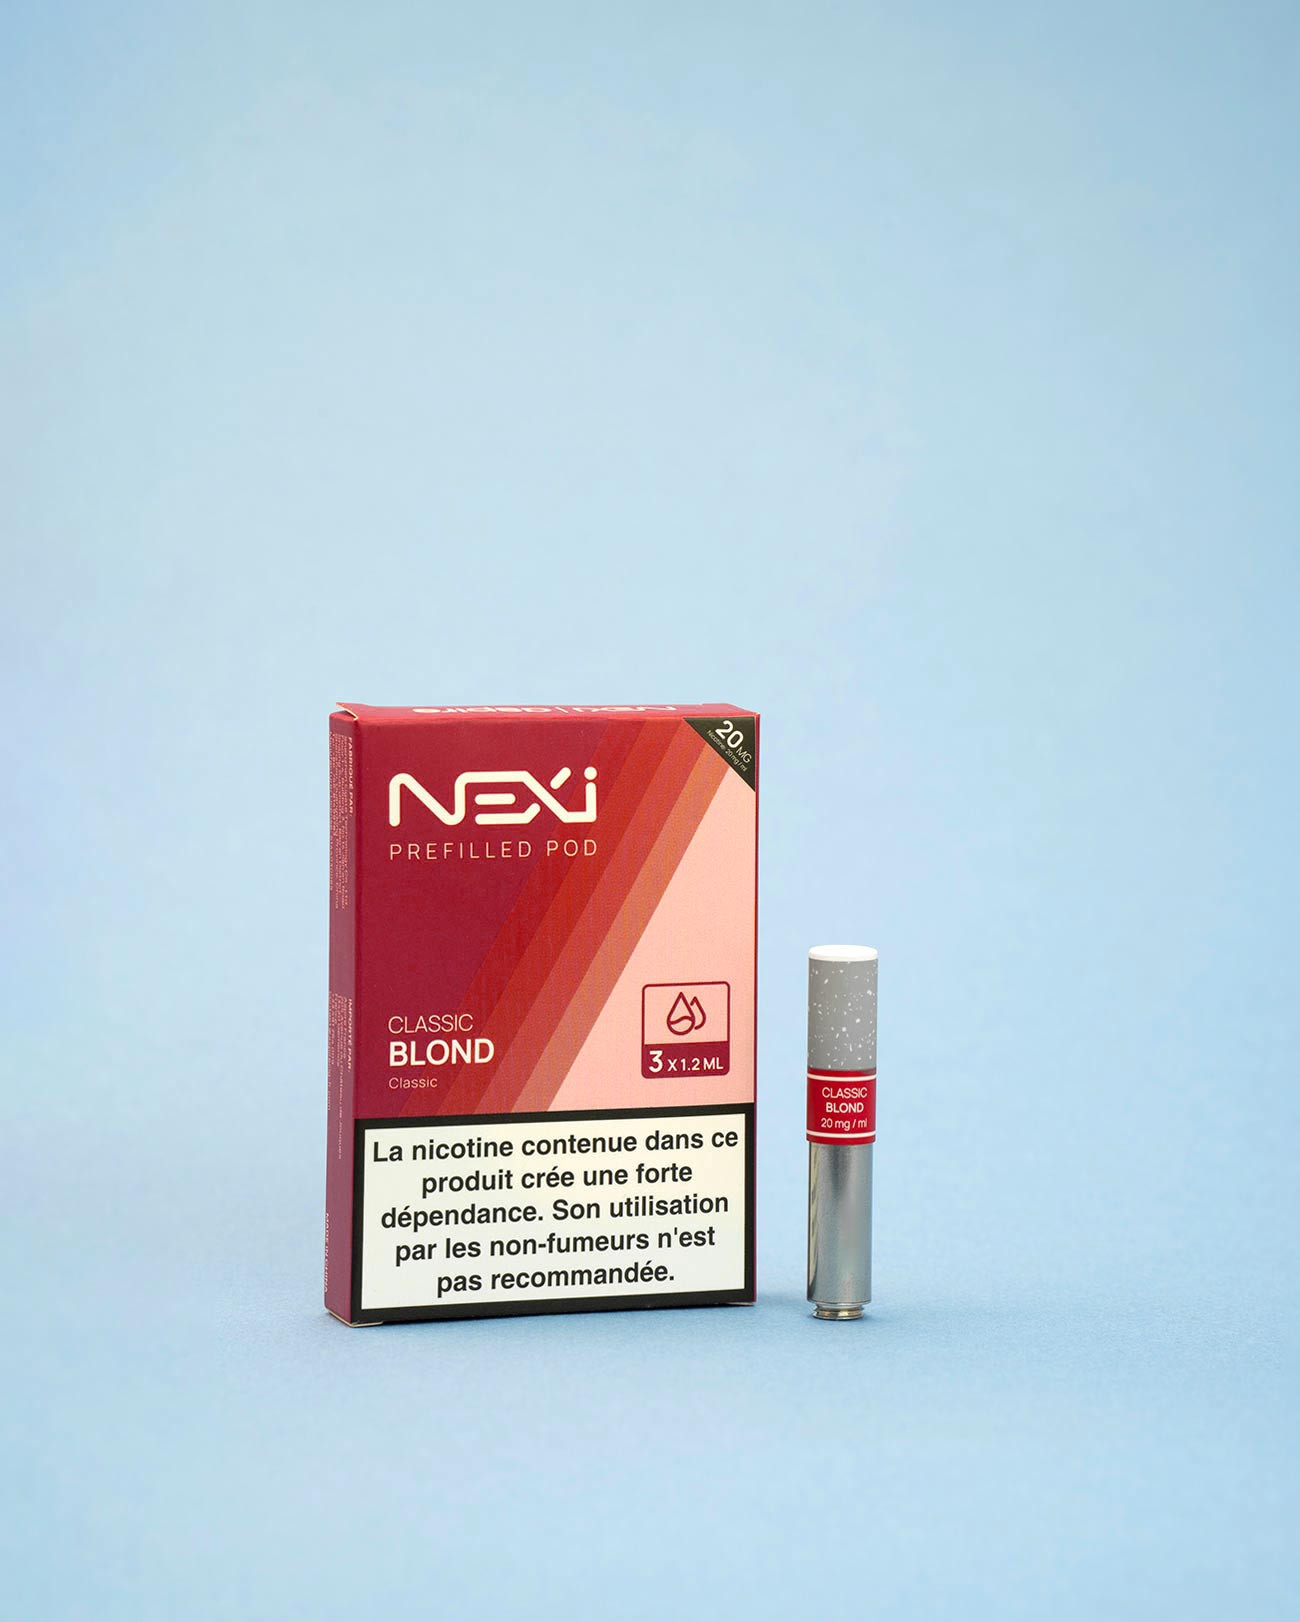 Cartouche Nexi One Aspire Classic Blond pour arrêter de fumer